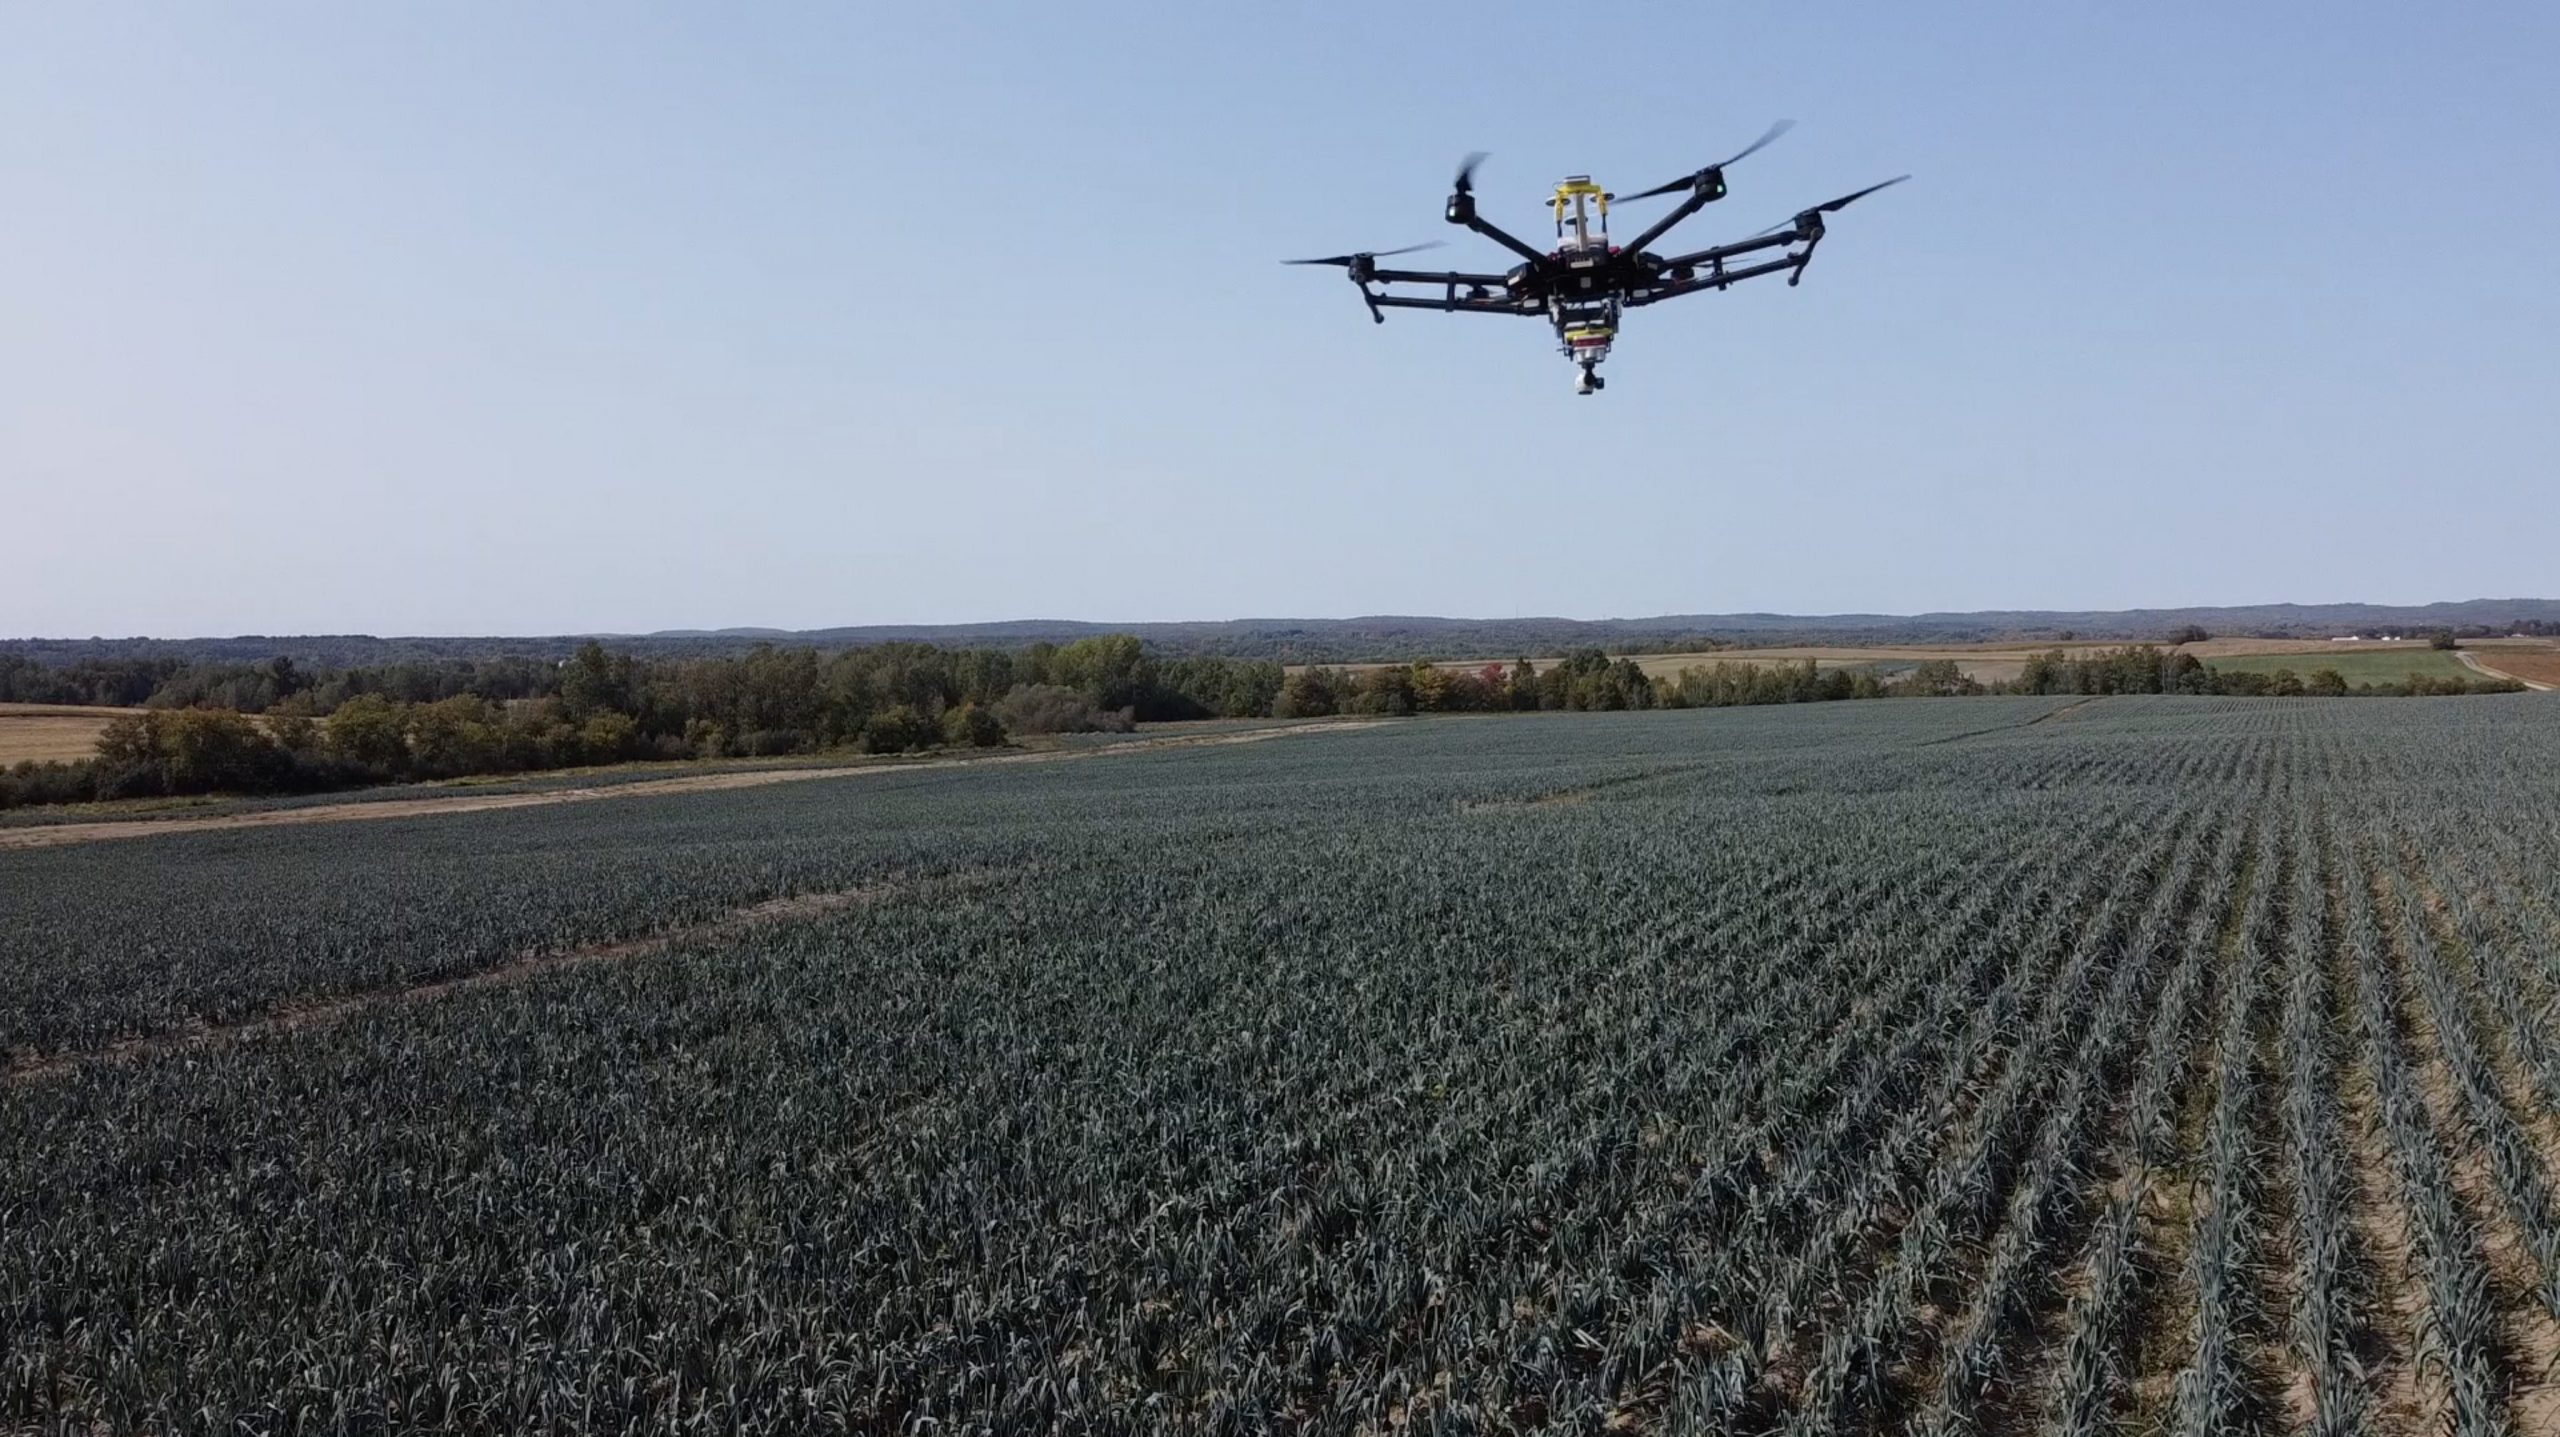 [VIDÉO] – Des drones arrivent dans les champs québécois